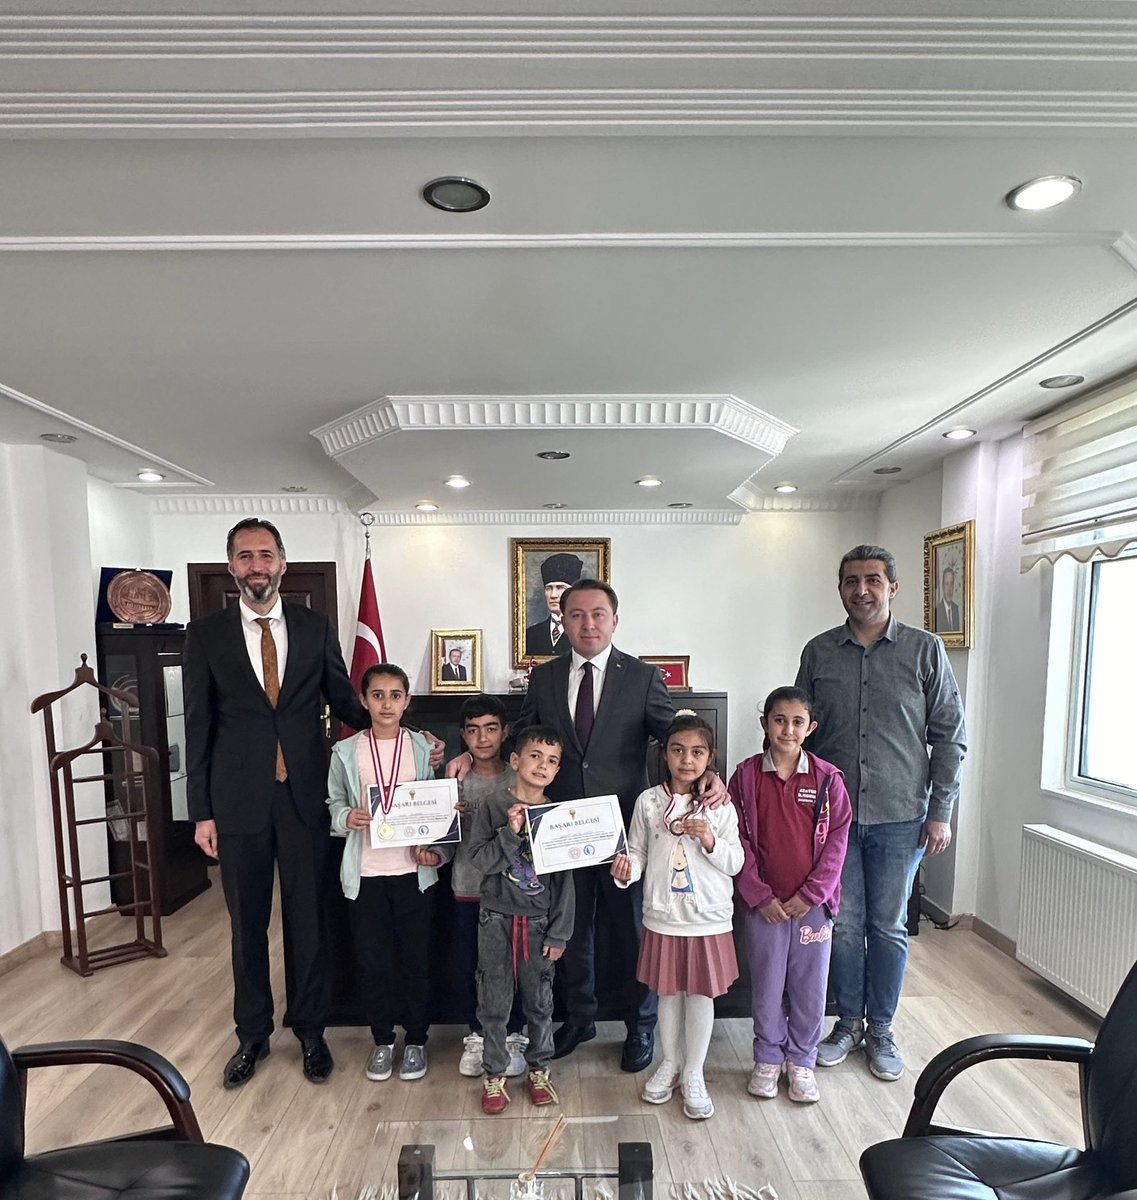 📍Akıl ve Zeka Oyunları 

Türkiye Akıl ve Zeka Oyunları Federasyonu tarafından düzenlenen turnuvada dereceye giren öğrencilerimizi misafir ettim. Tebrik ederim. 

#Eğil #Diyarbakır